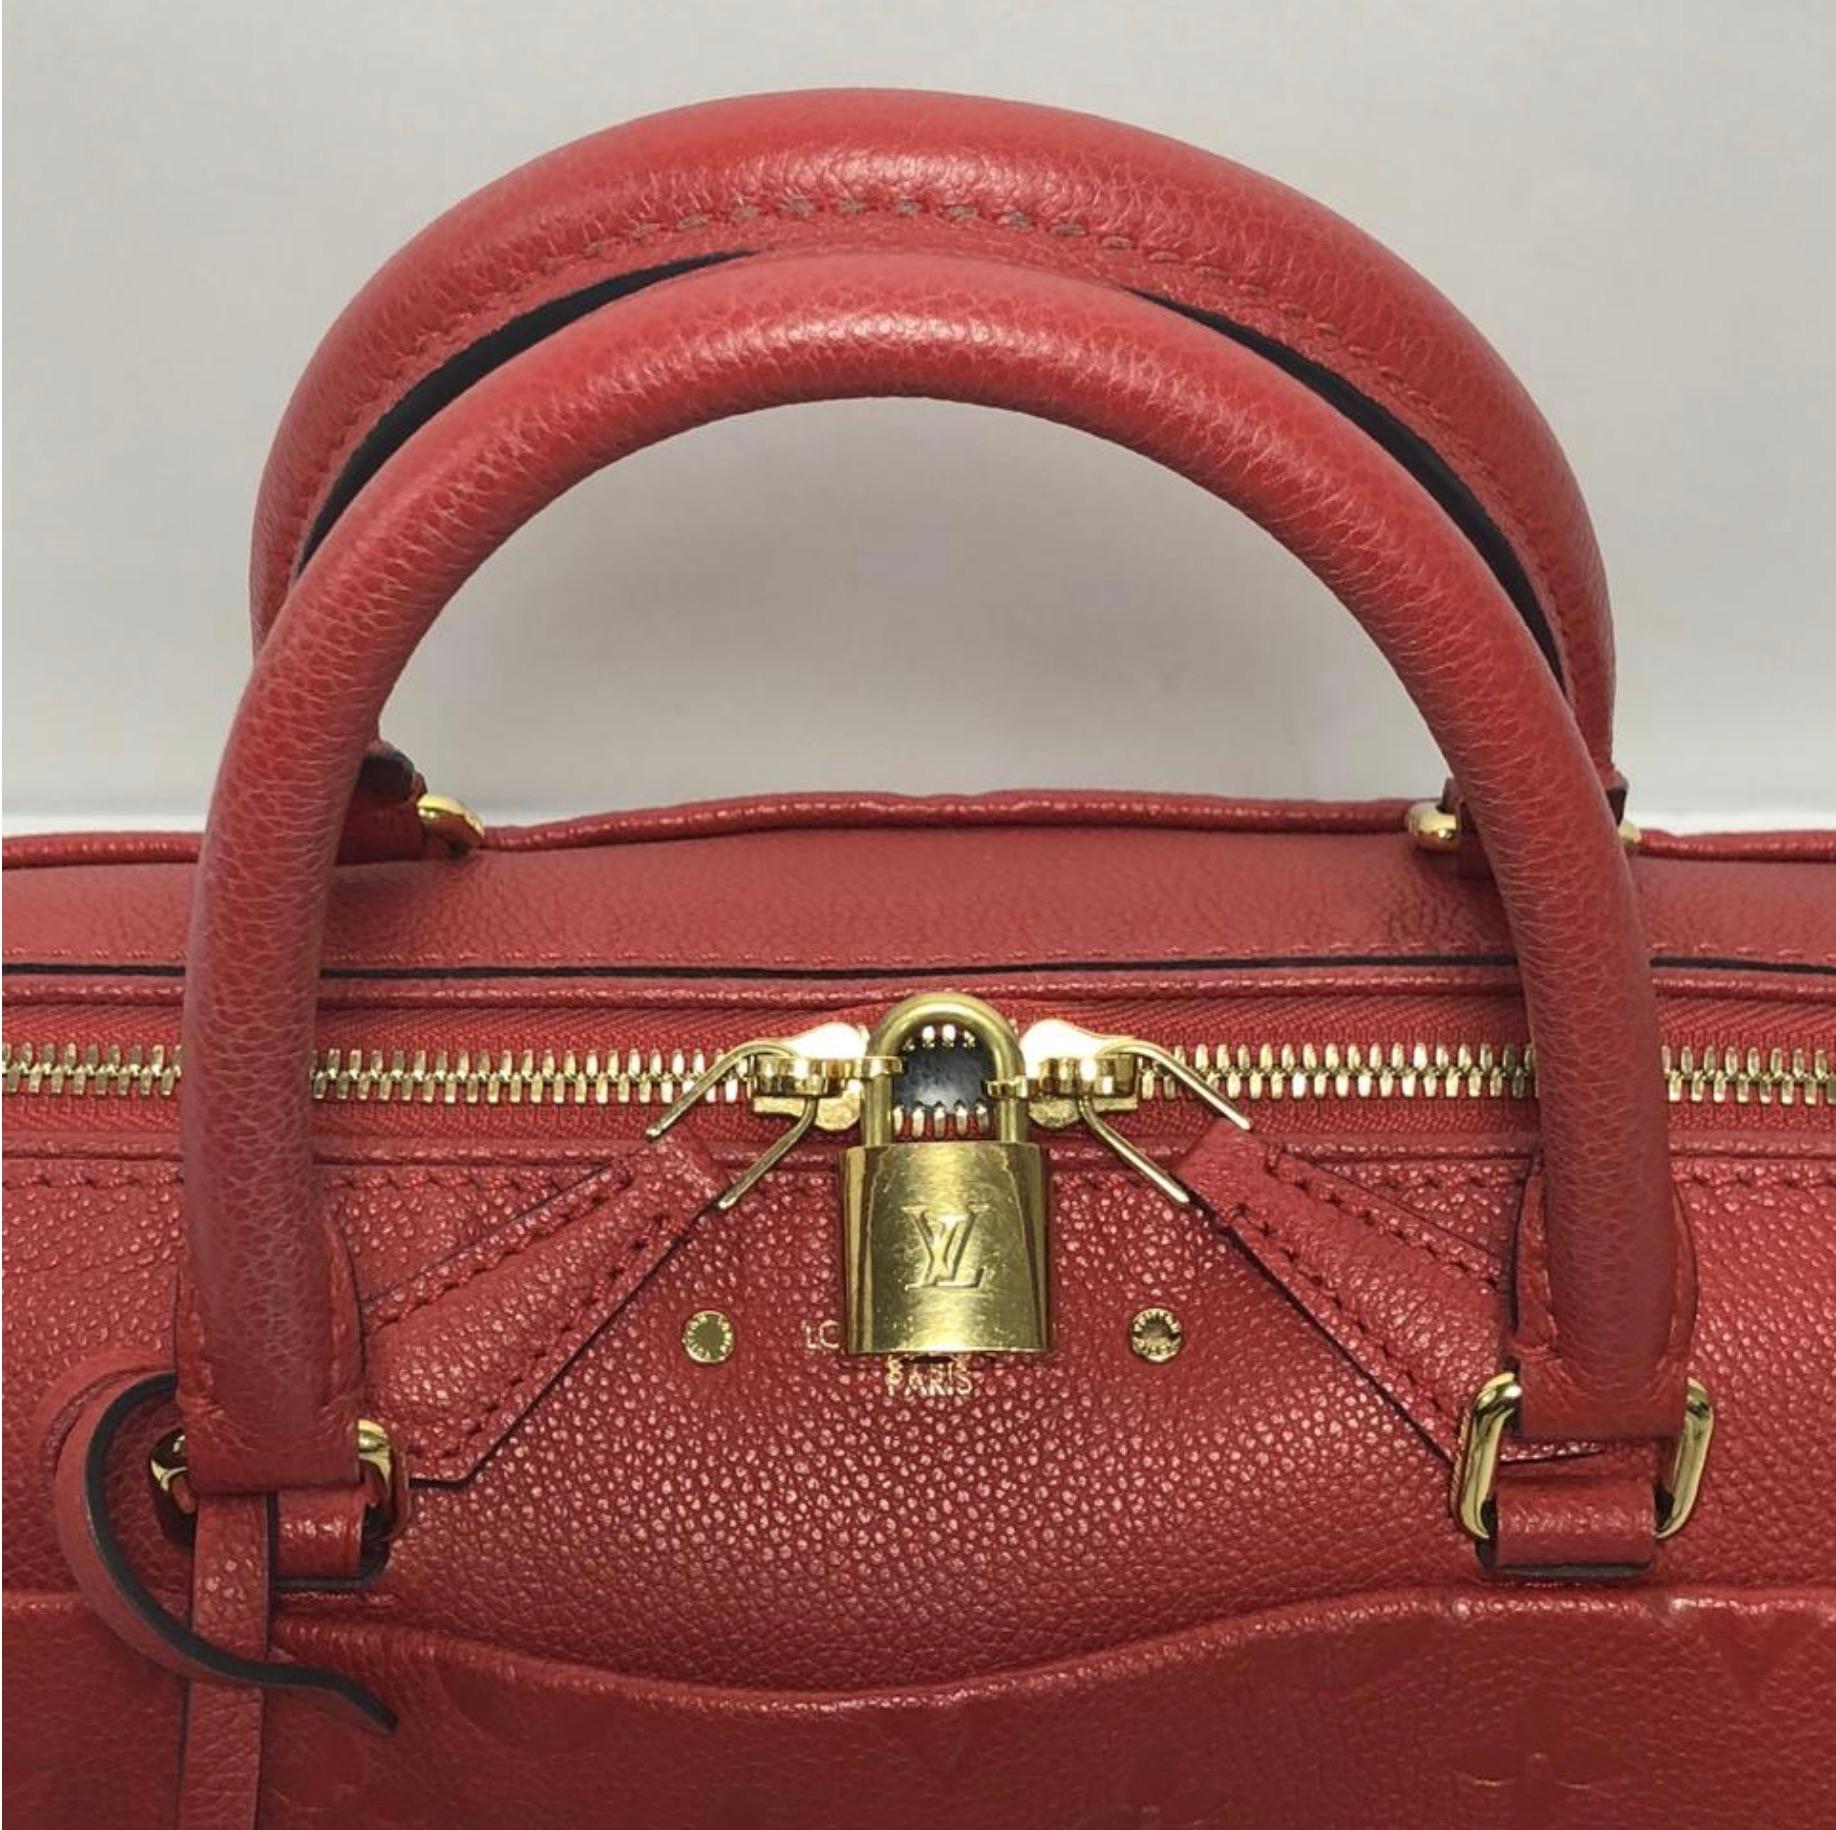 Louis Vuitton Empreinte Speedy 25 in Red Satchel Handbag In Excellent Condition For Sale In Saint Charles, IL